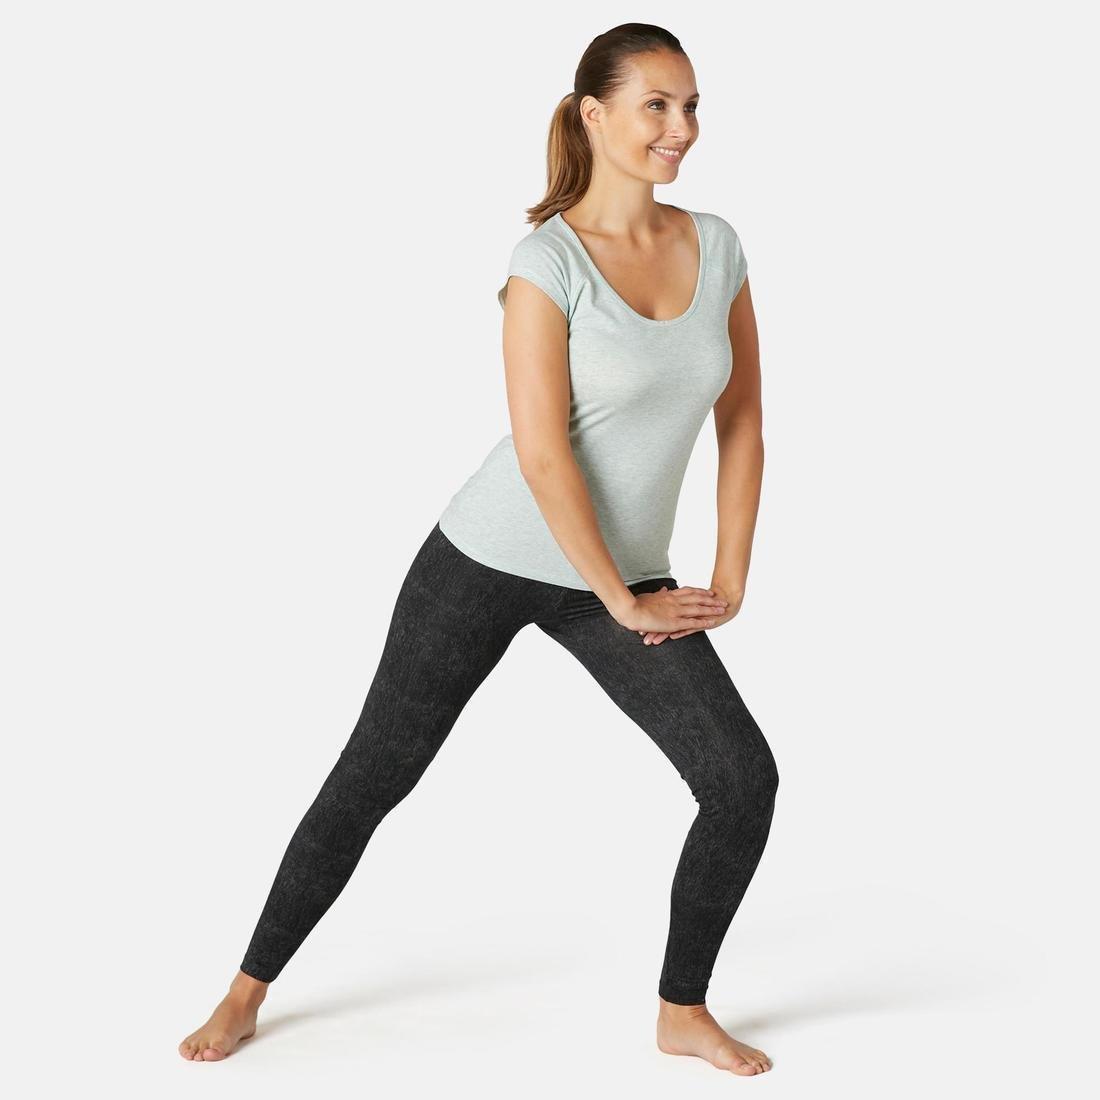 DOMYOS Fit500Womens Slim-Fit Gym Stretching Leggings, Grey